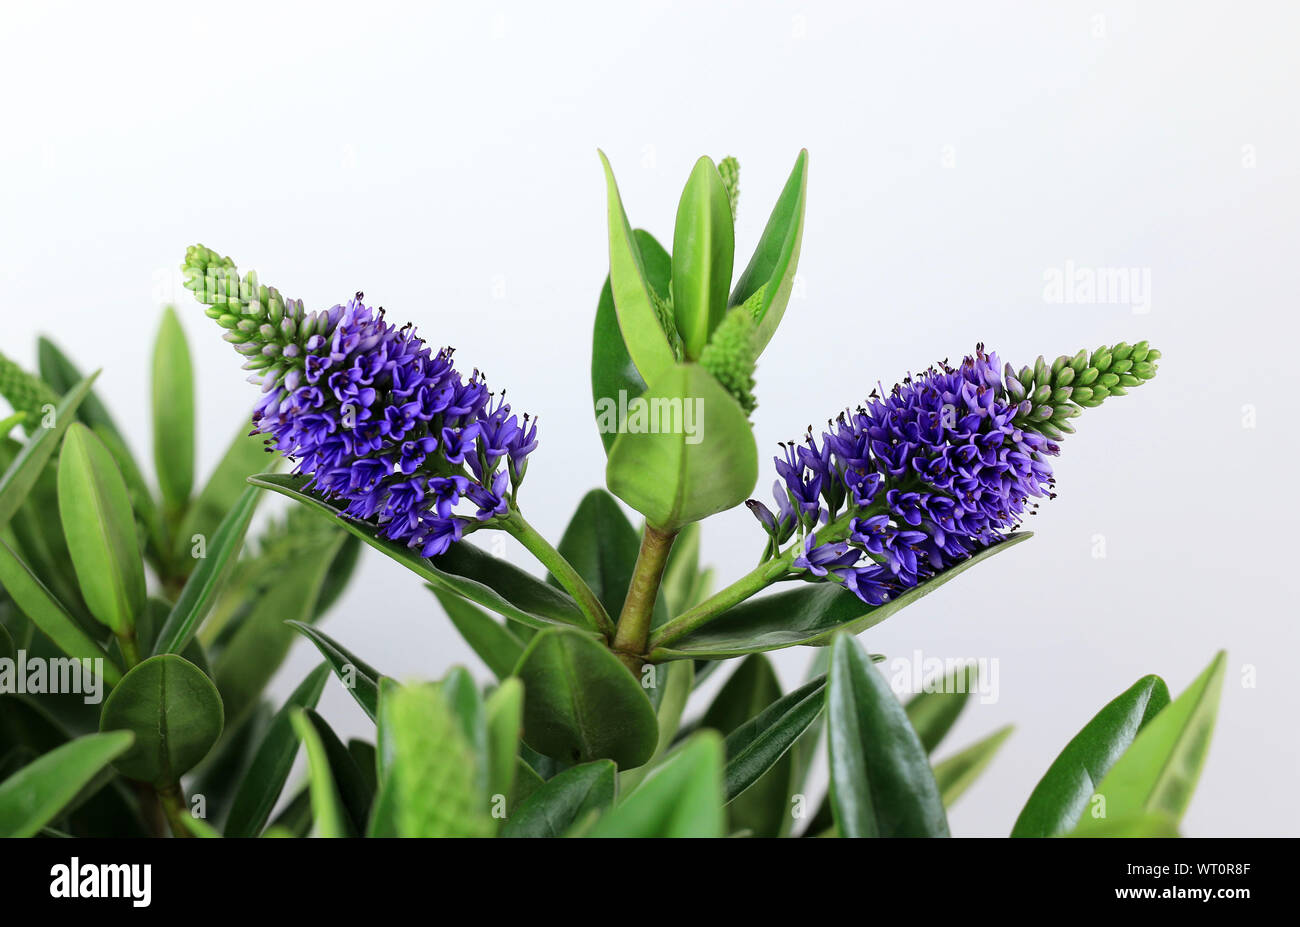 Hebe plant isolated on white background. Close-up. New Zealand plant. Stock Photo